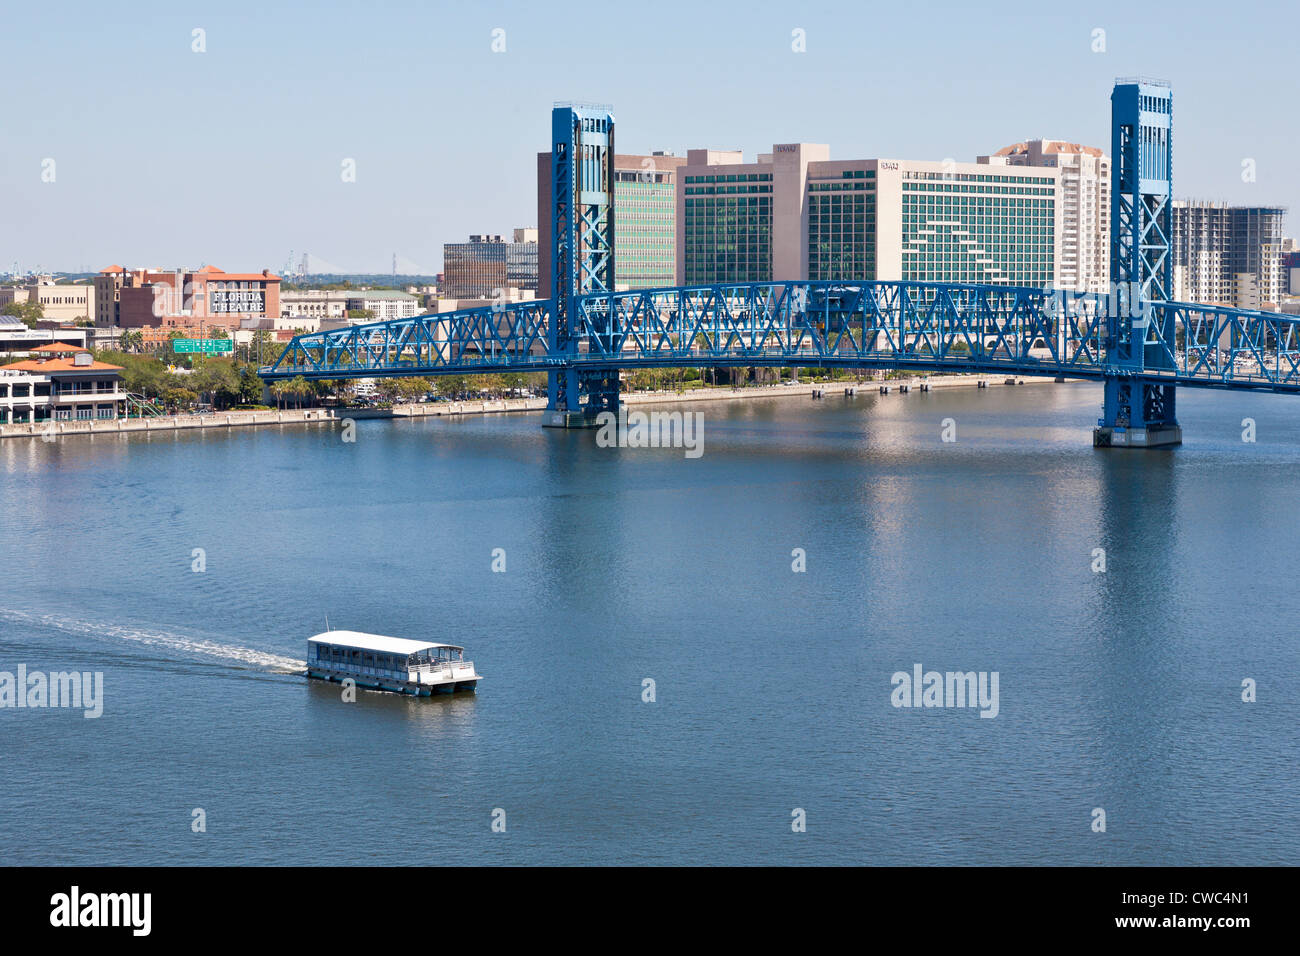 En bateau-taxi sur la rivière Saint-Jean, près du pont de la rue principale au centre-ville de Jacksonville, FL Banque D'Images